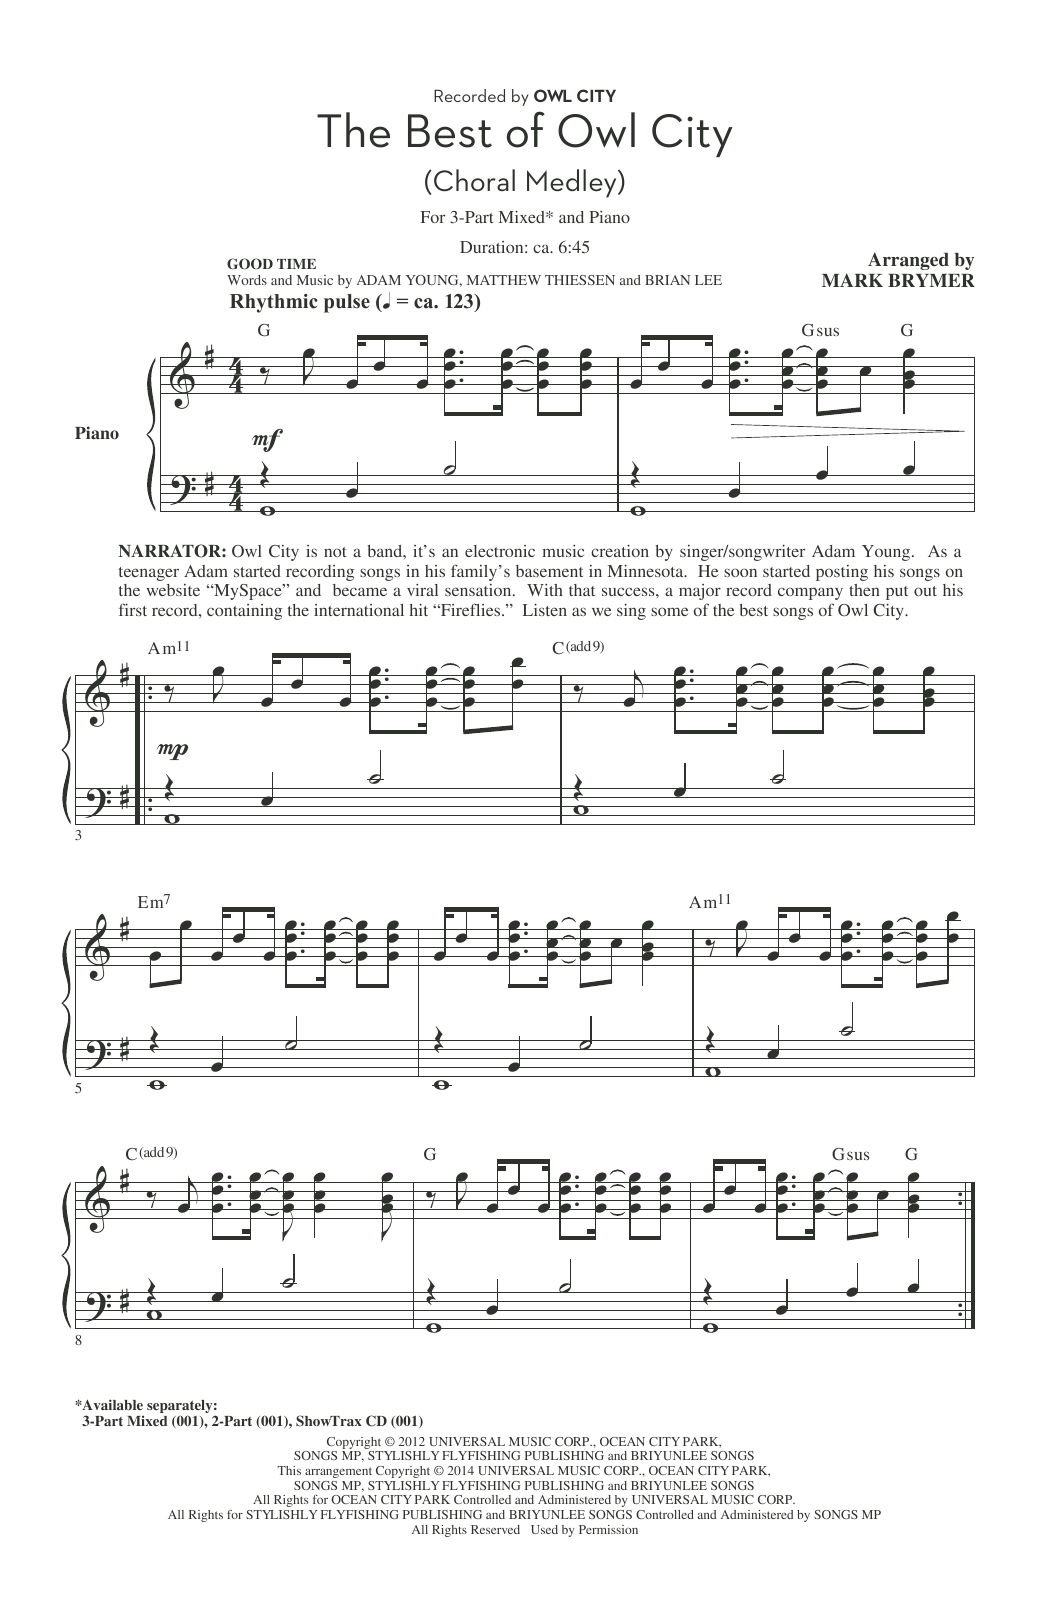 Owl City "Fireflies (arr. Mark Brymer)" Sheet Music PDF Notes, Chords | Pop Score 2-Part Choir Download SKU: 155503